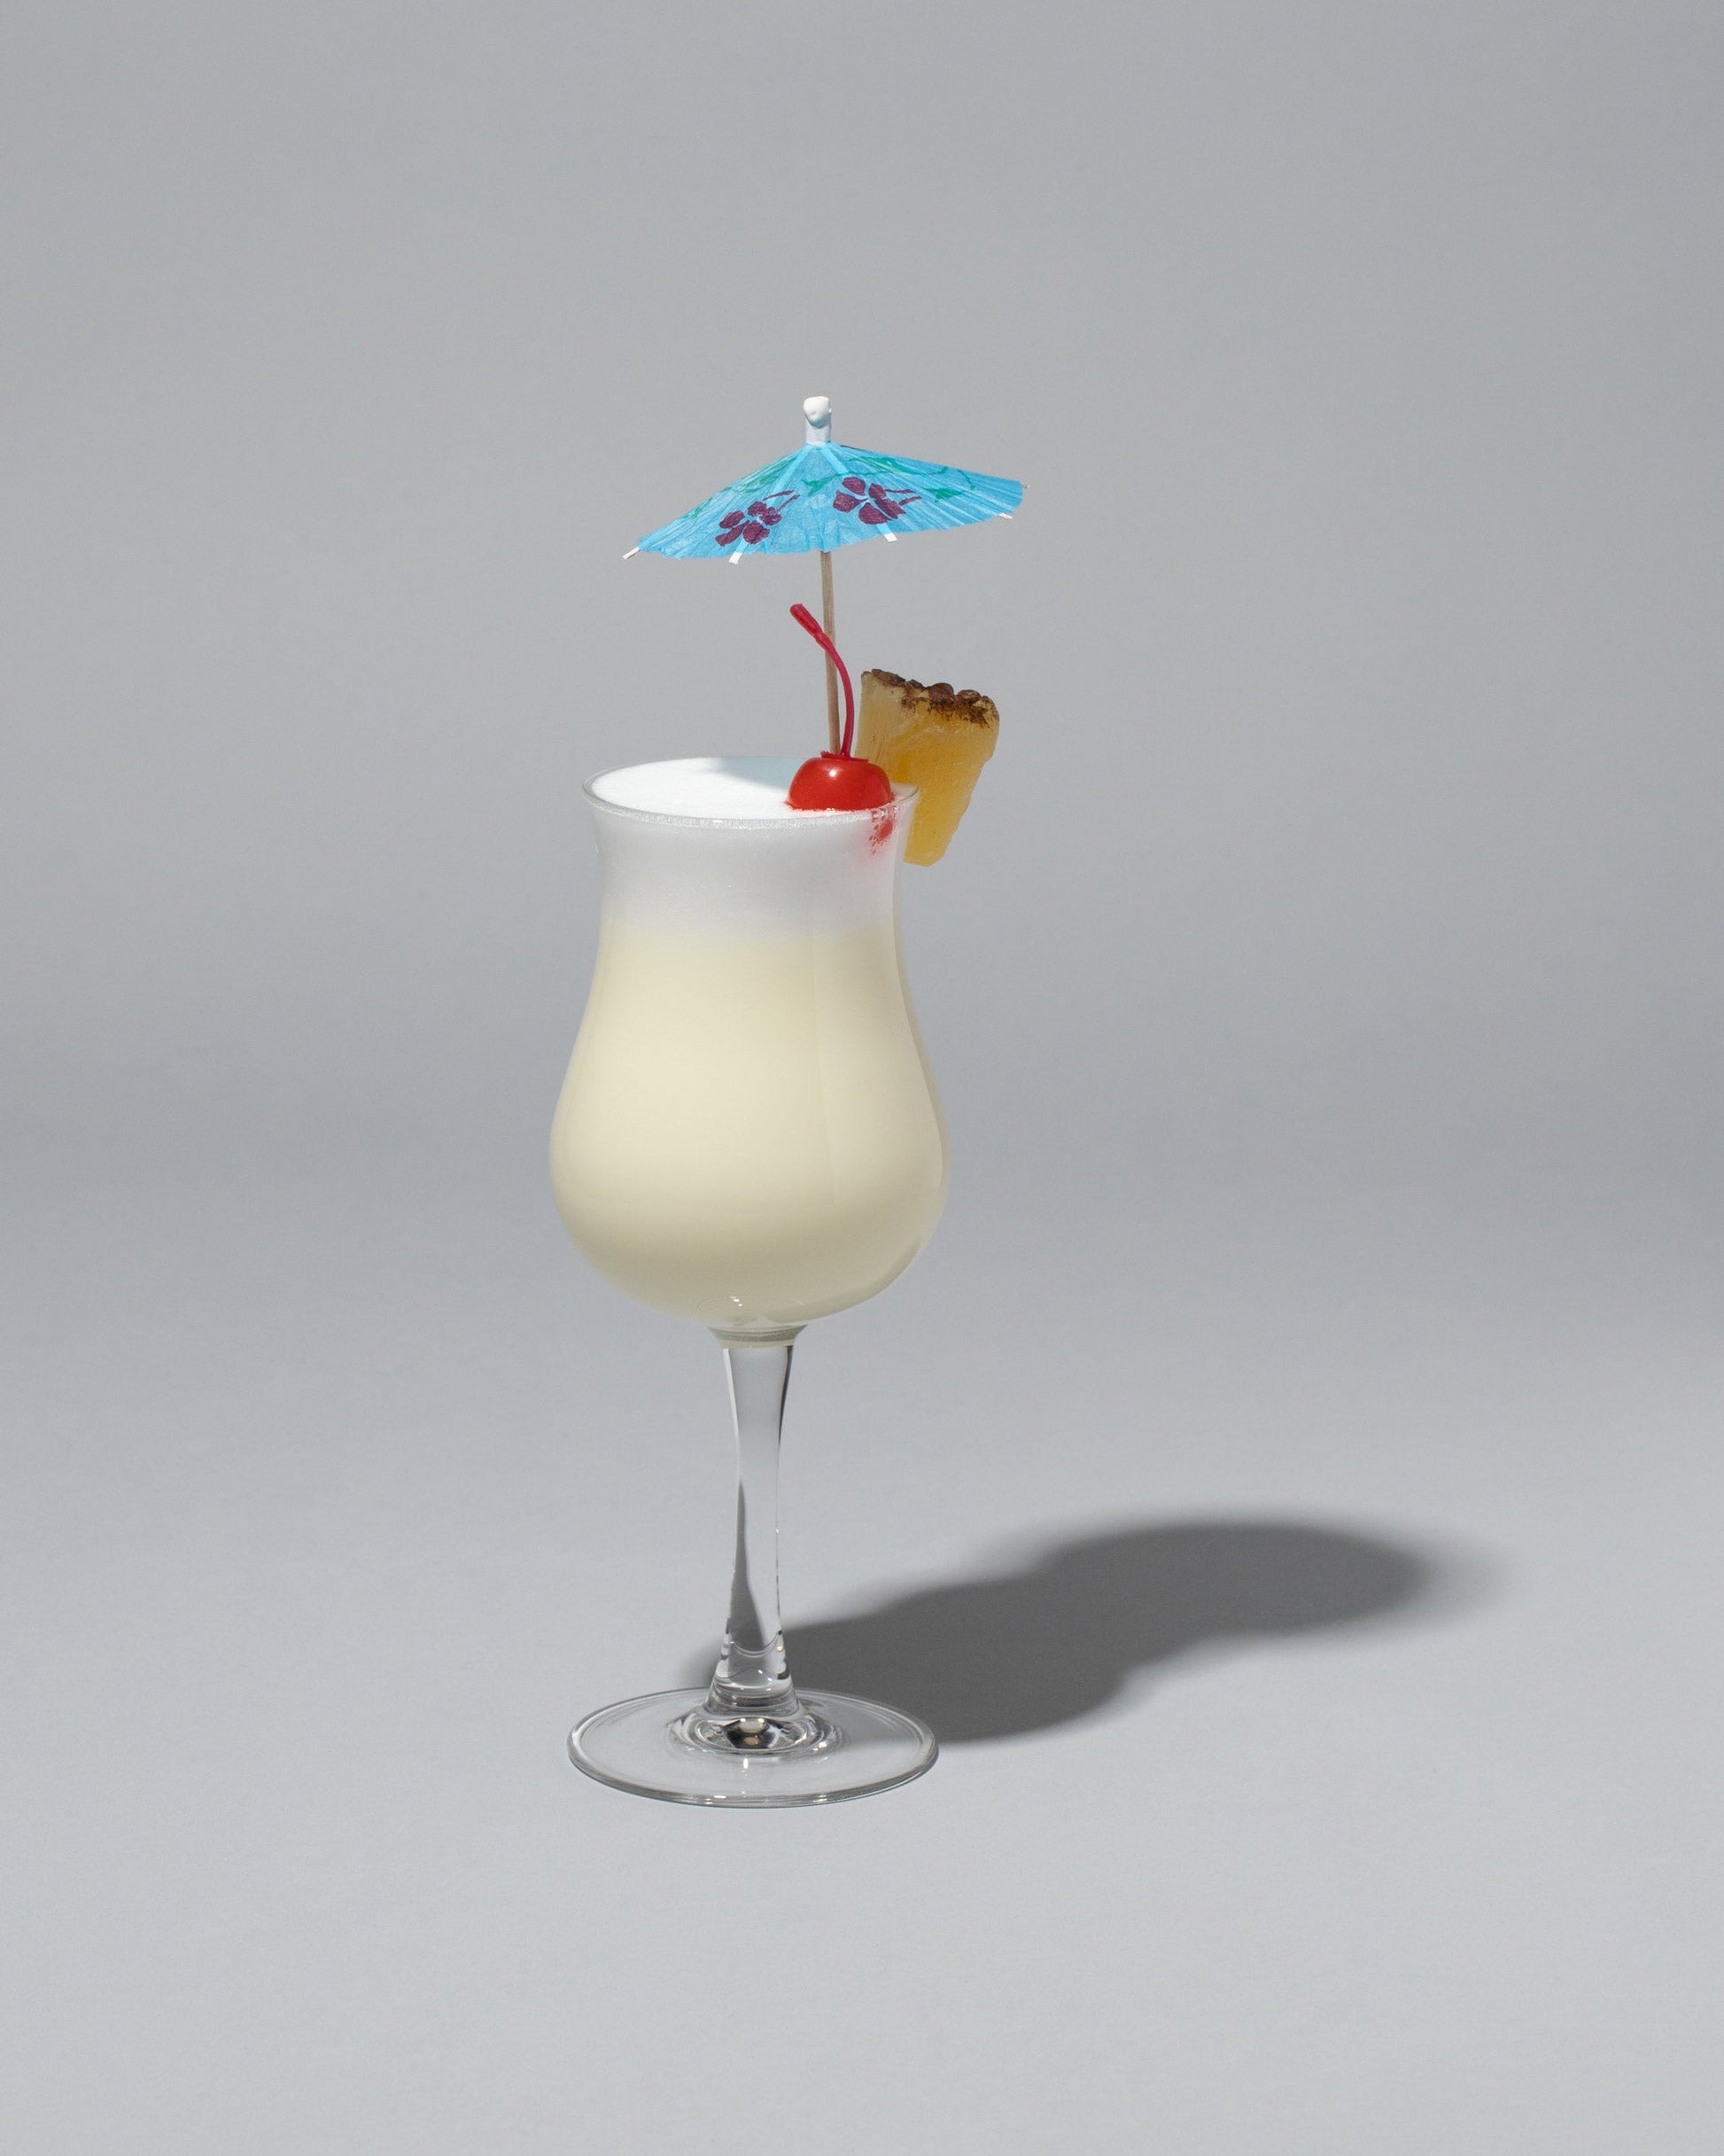  Spills Tiki Cocktail on light color background.